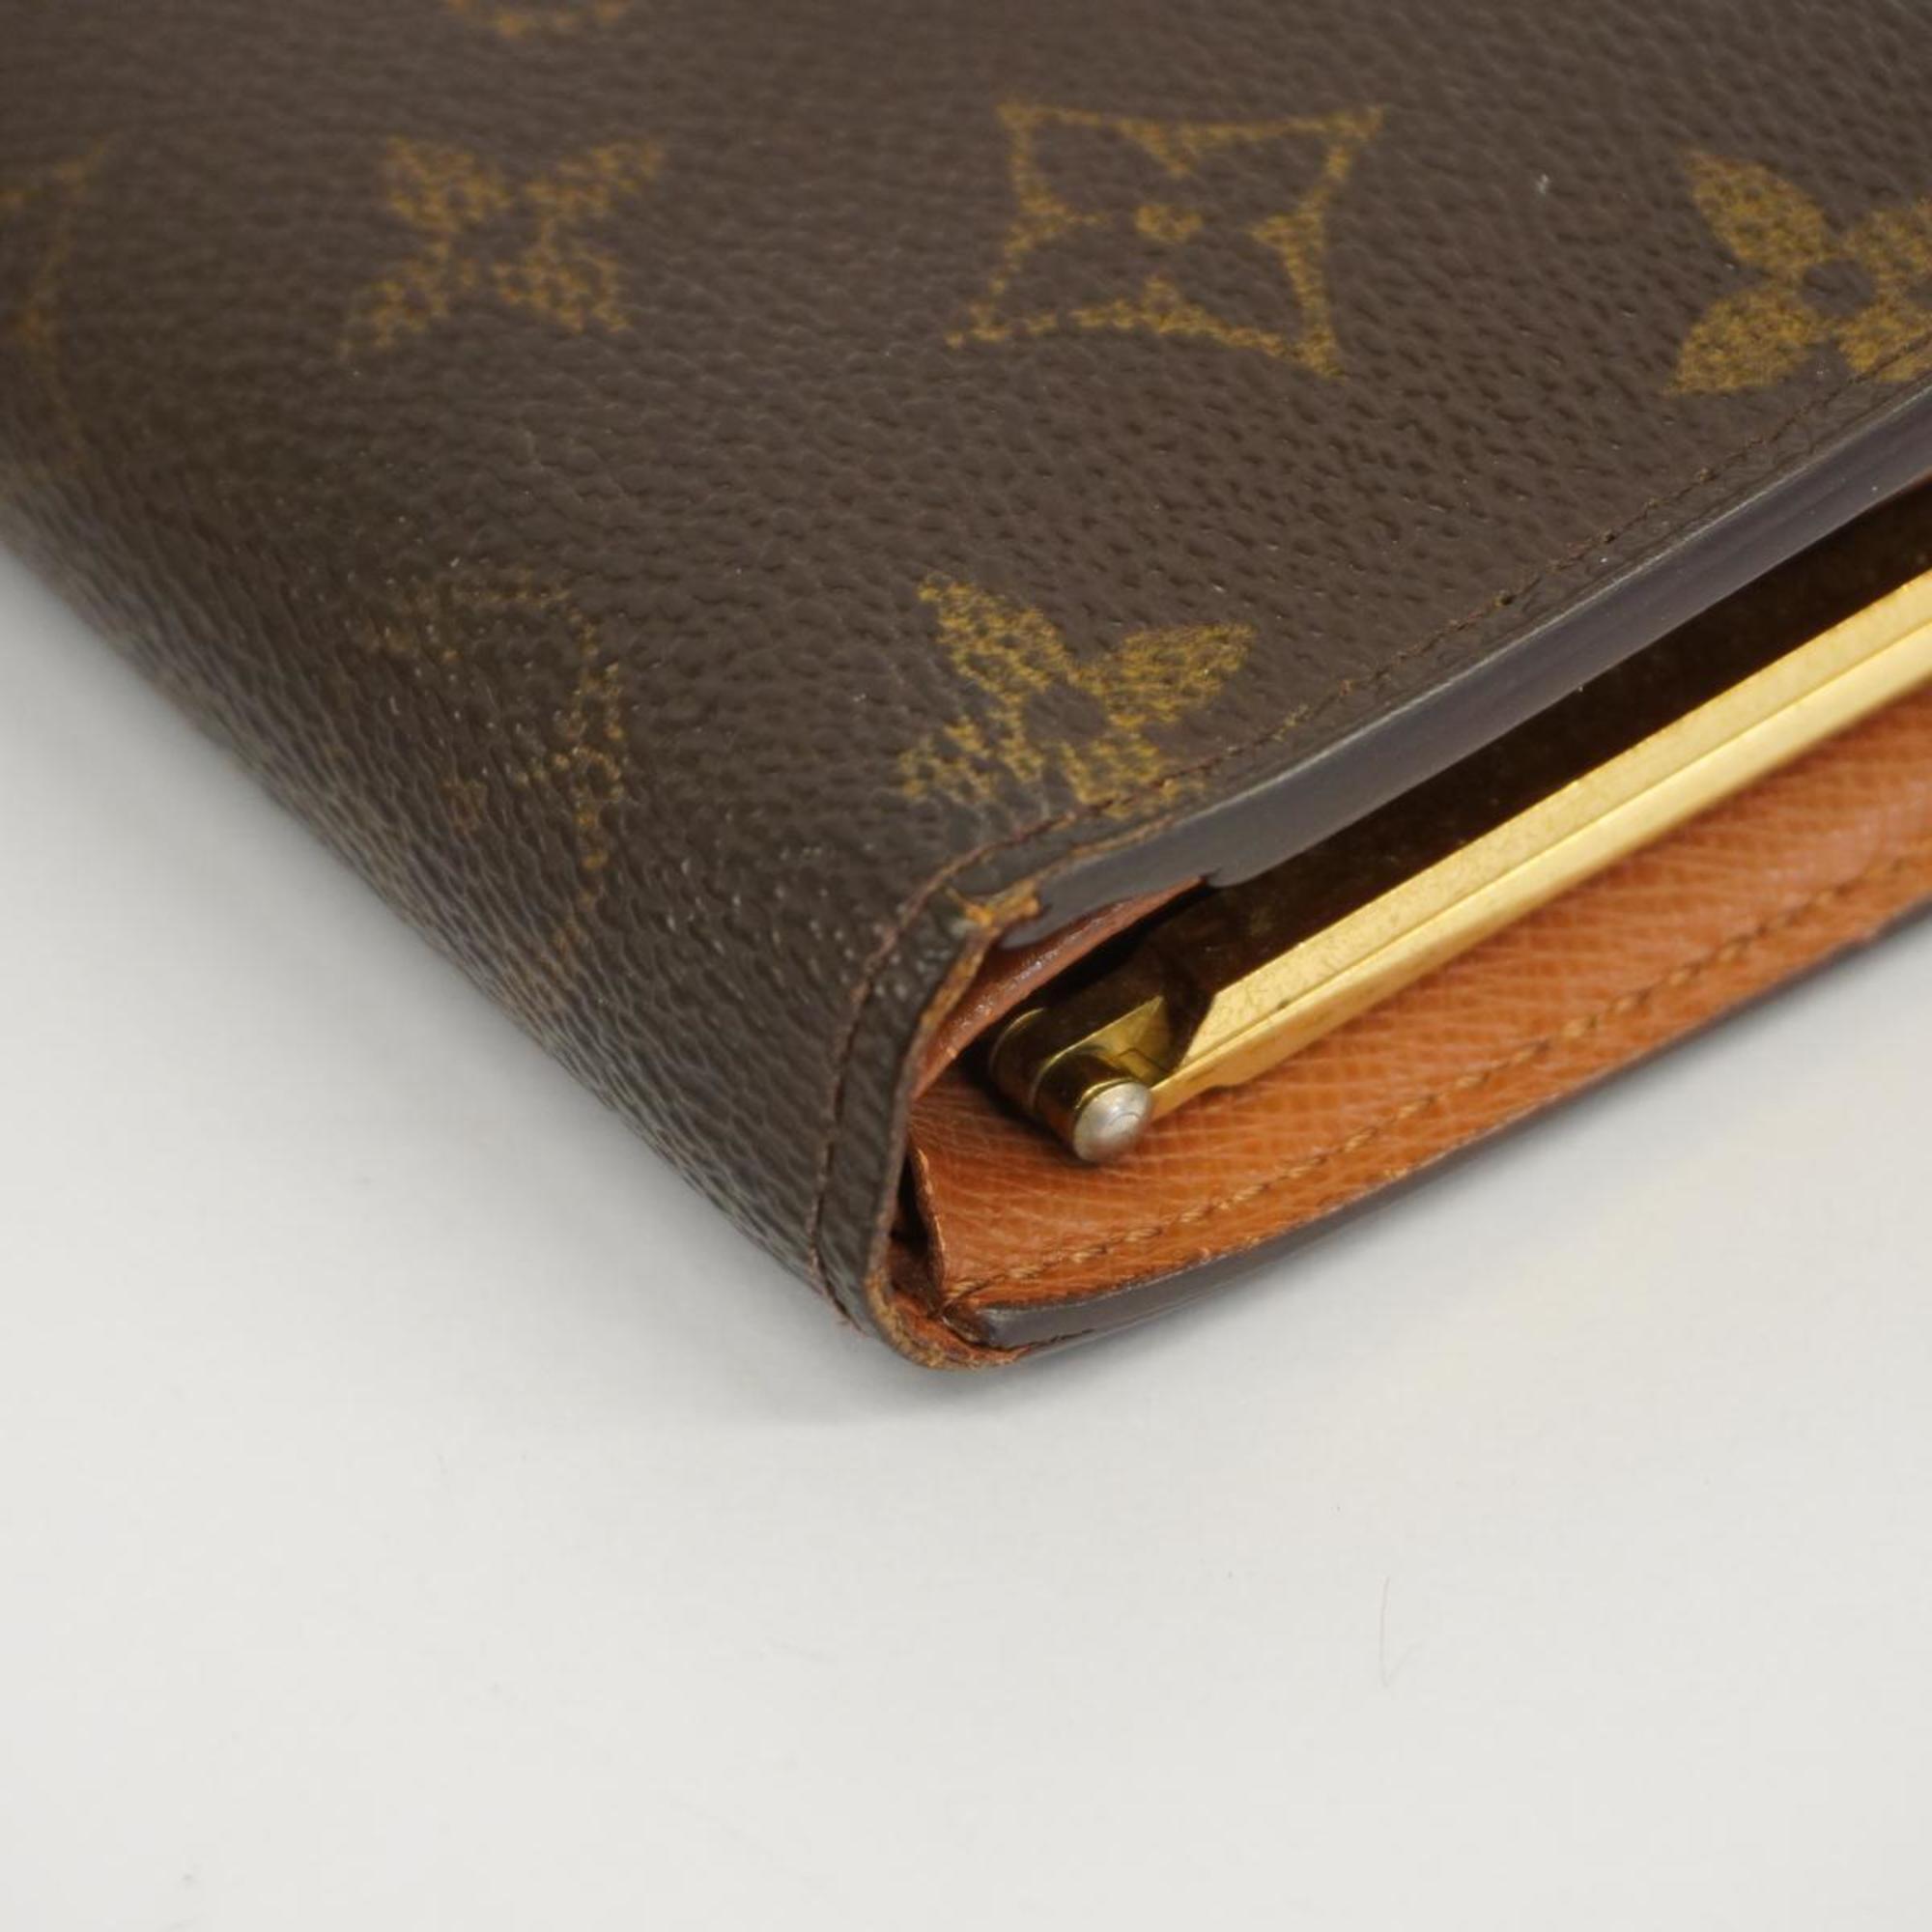 ルイ・ヴィトン(Louis Vuitton) ルイ・ヴィトン 財布 モノグラム ポルトモネビエヴィエノワ M61663 ブラウンレディース